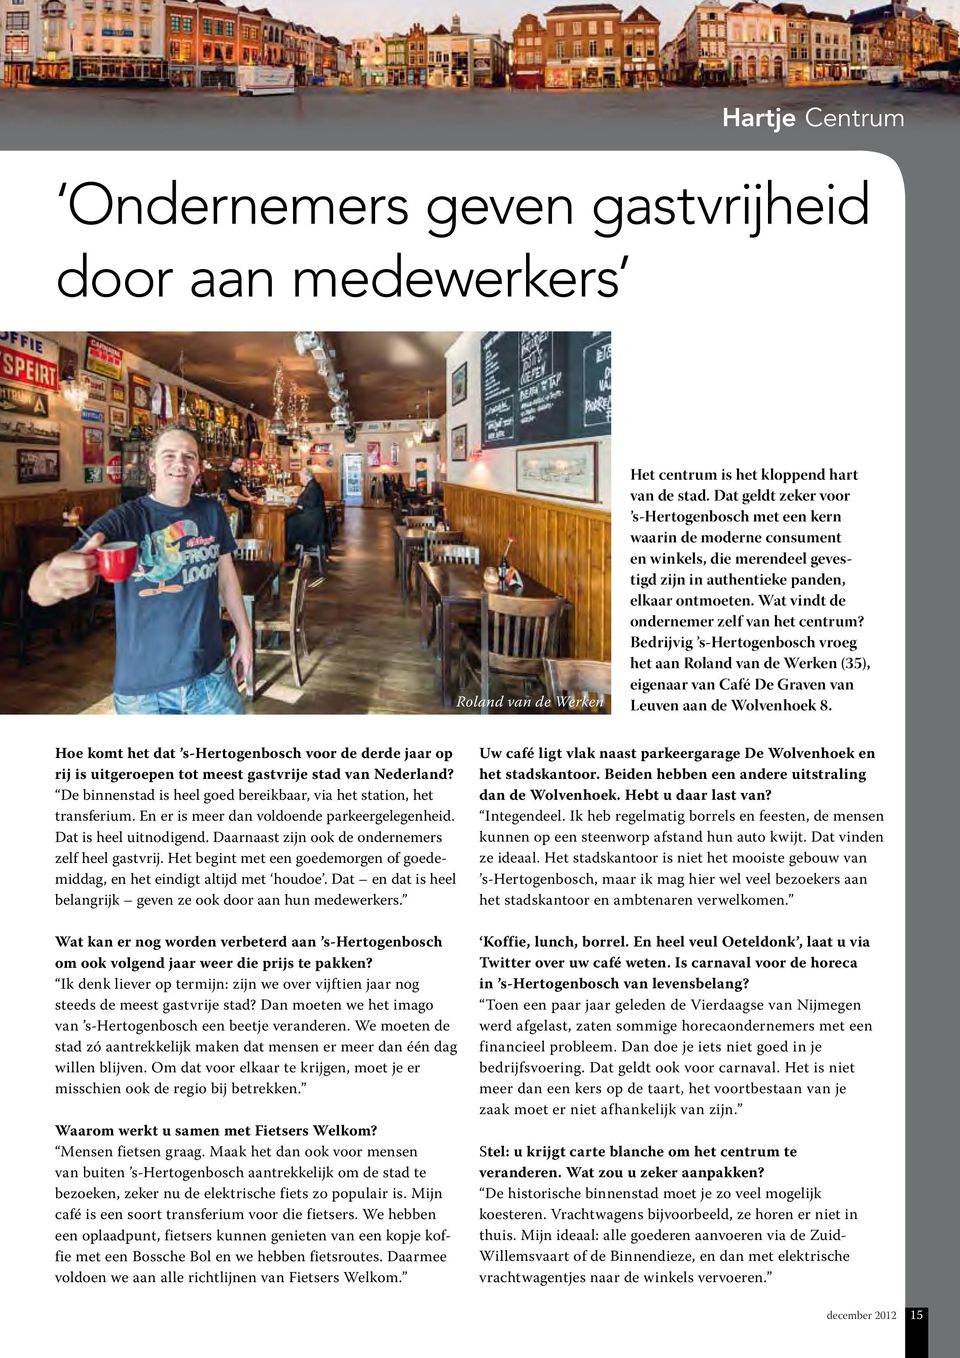 Wat vindt de ondernemer zelf van het centrum? Bedrijvig s-hertogenbosch vroeg het aan Roland van de Werken (35), eigenaar van Café De Graven van Leuven aan de Wolvenhoek 8.